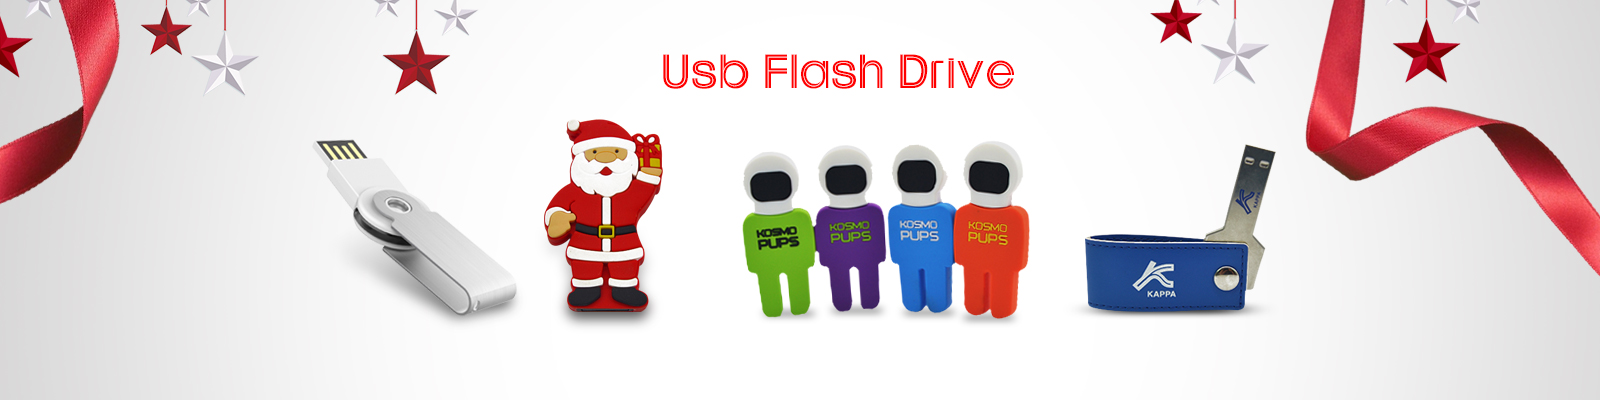 2gb flash drive | Usb sticks | Metal usb flash drive | leadway group limited